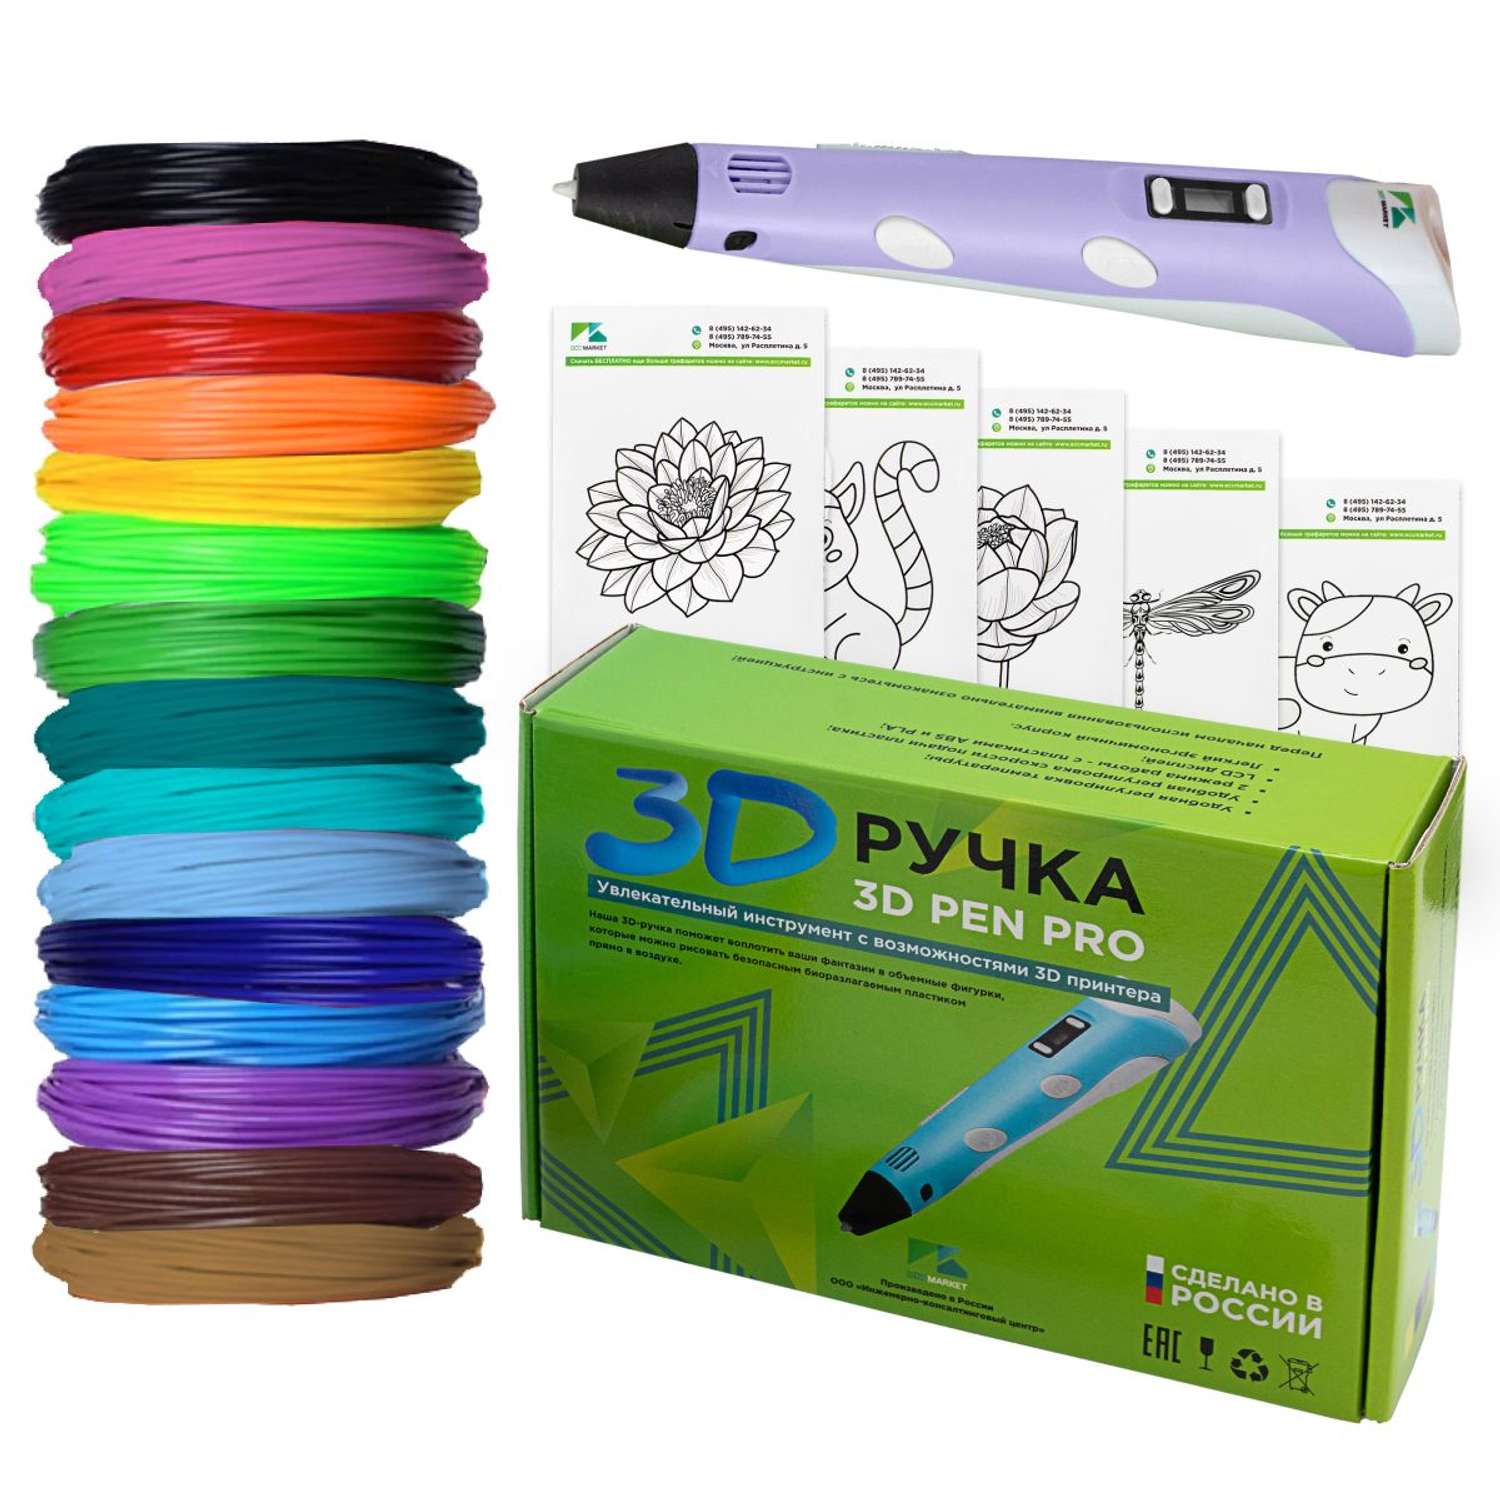 3D ручка ECC Market 3D Pen PRO 15 фиолетовая - фото 1